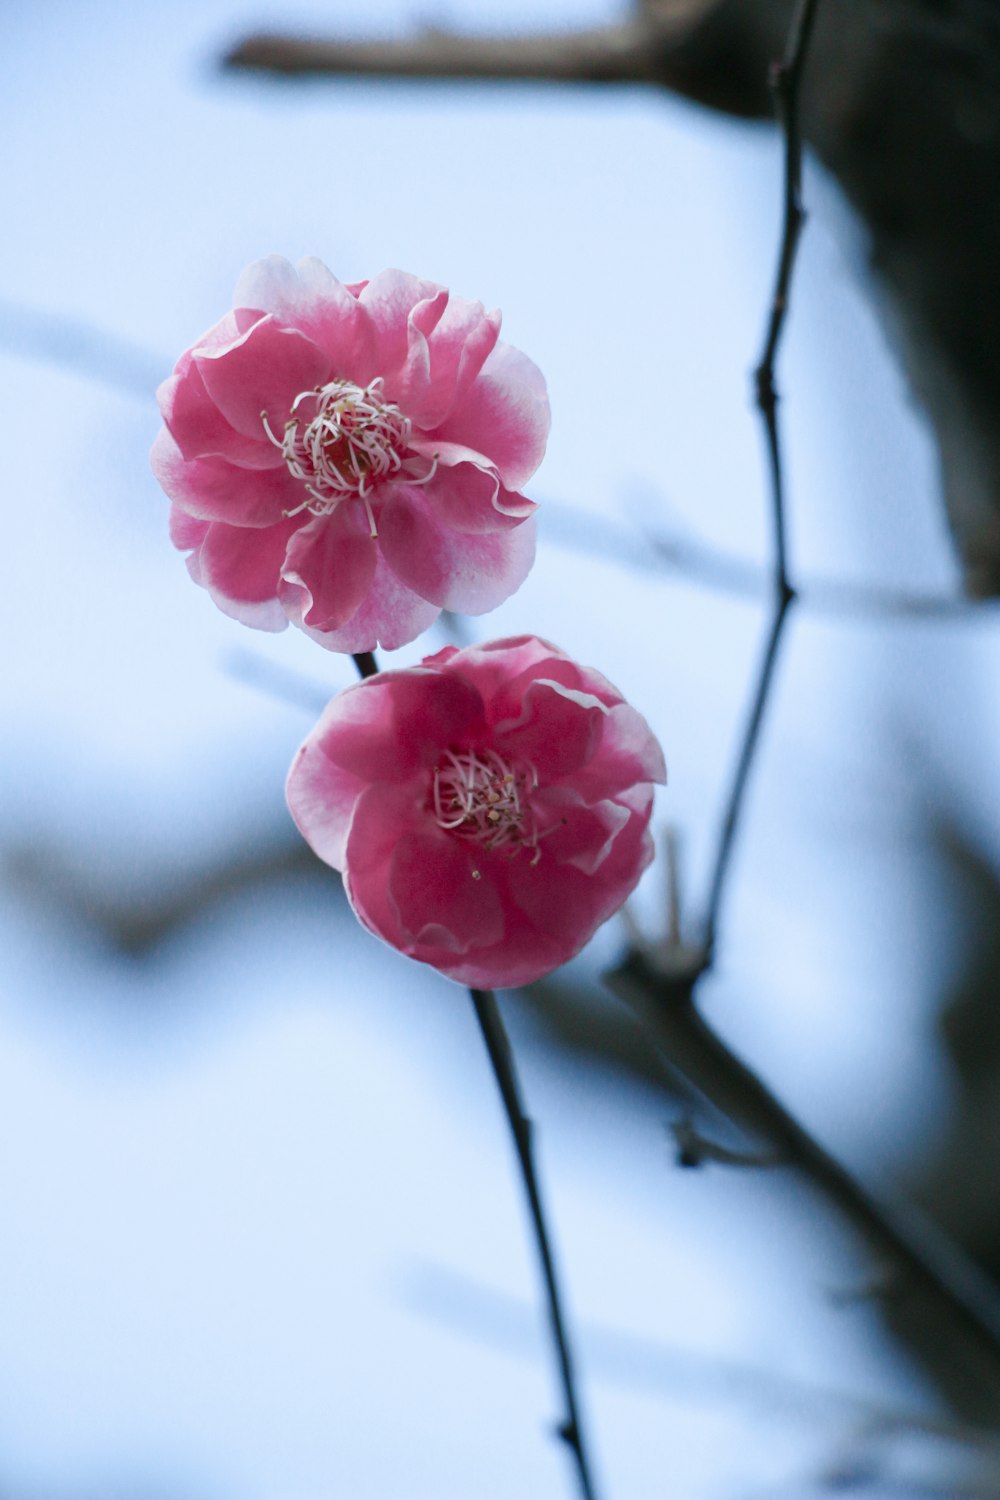 나무 위에 앉아 있는 분홍색 꽃 두 개